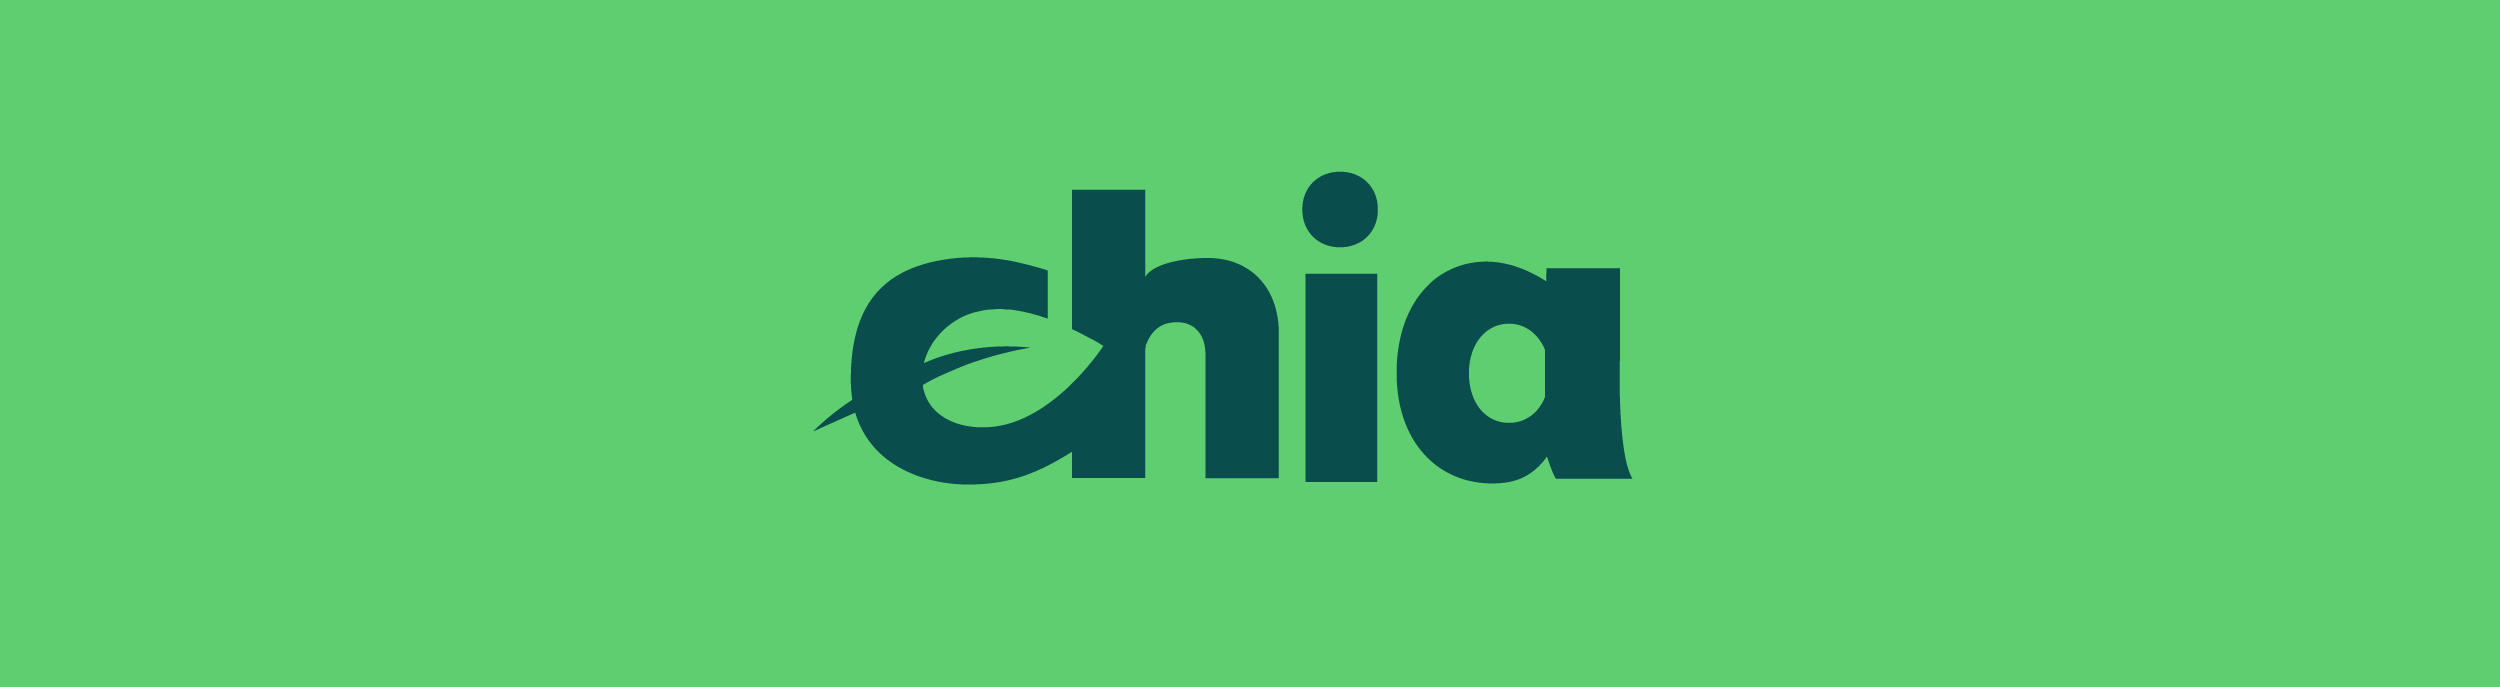 Chia